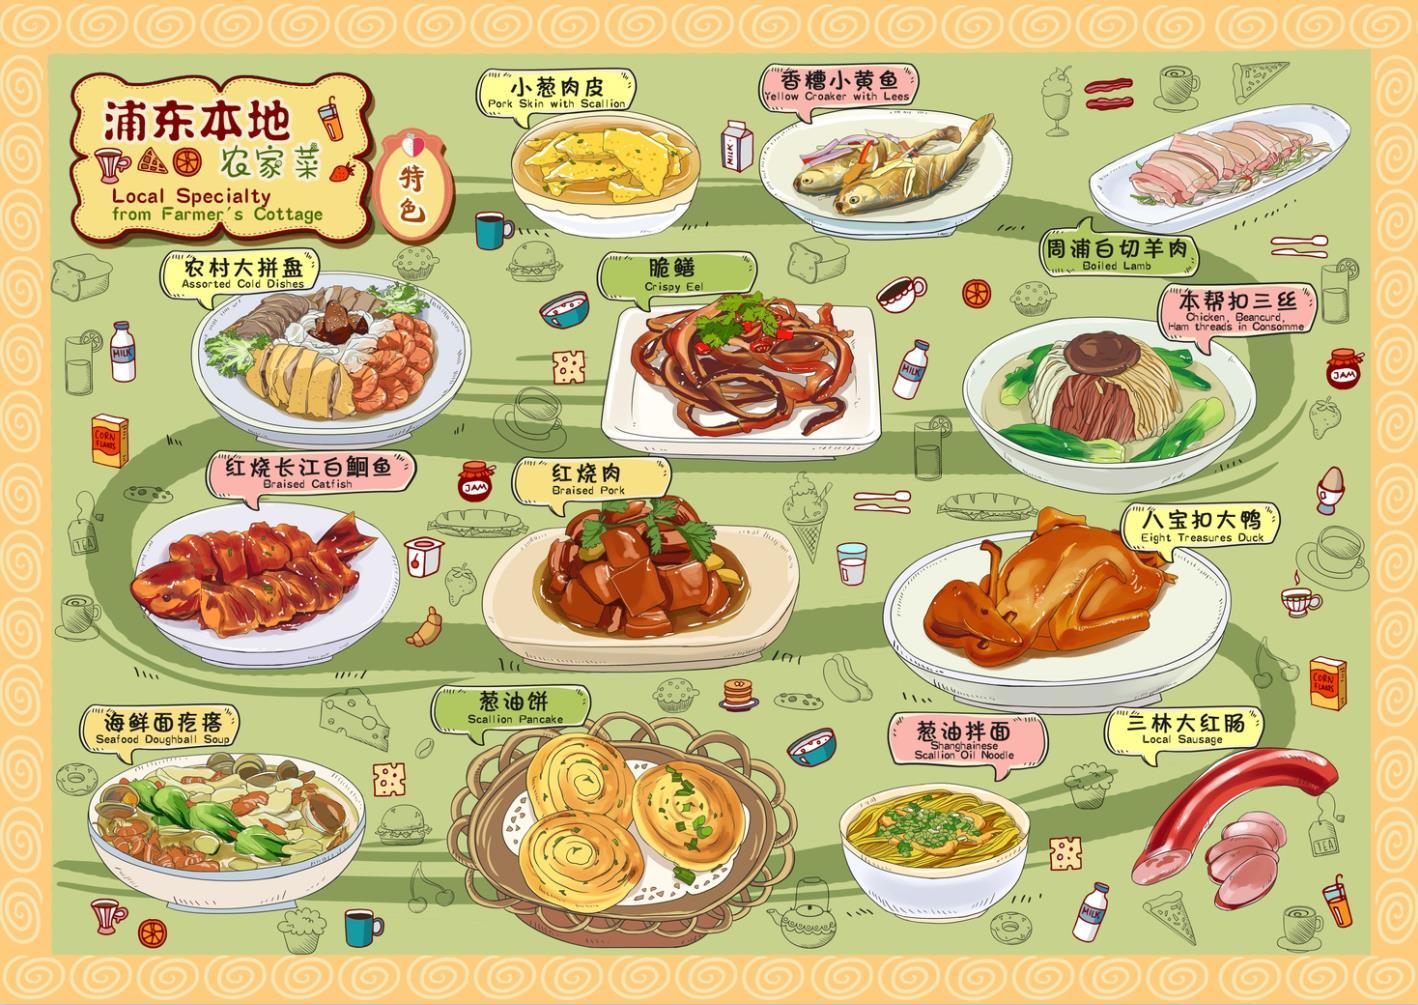 创意卡通零食食物角色形象插画元素 - 模板 - Canva可画